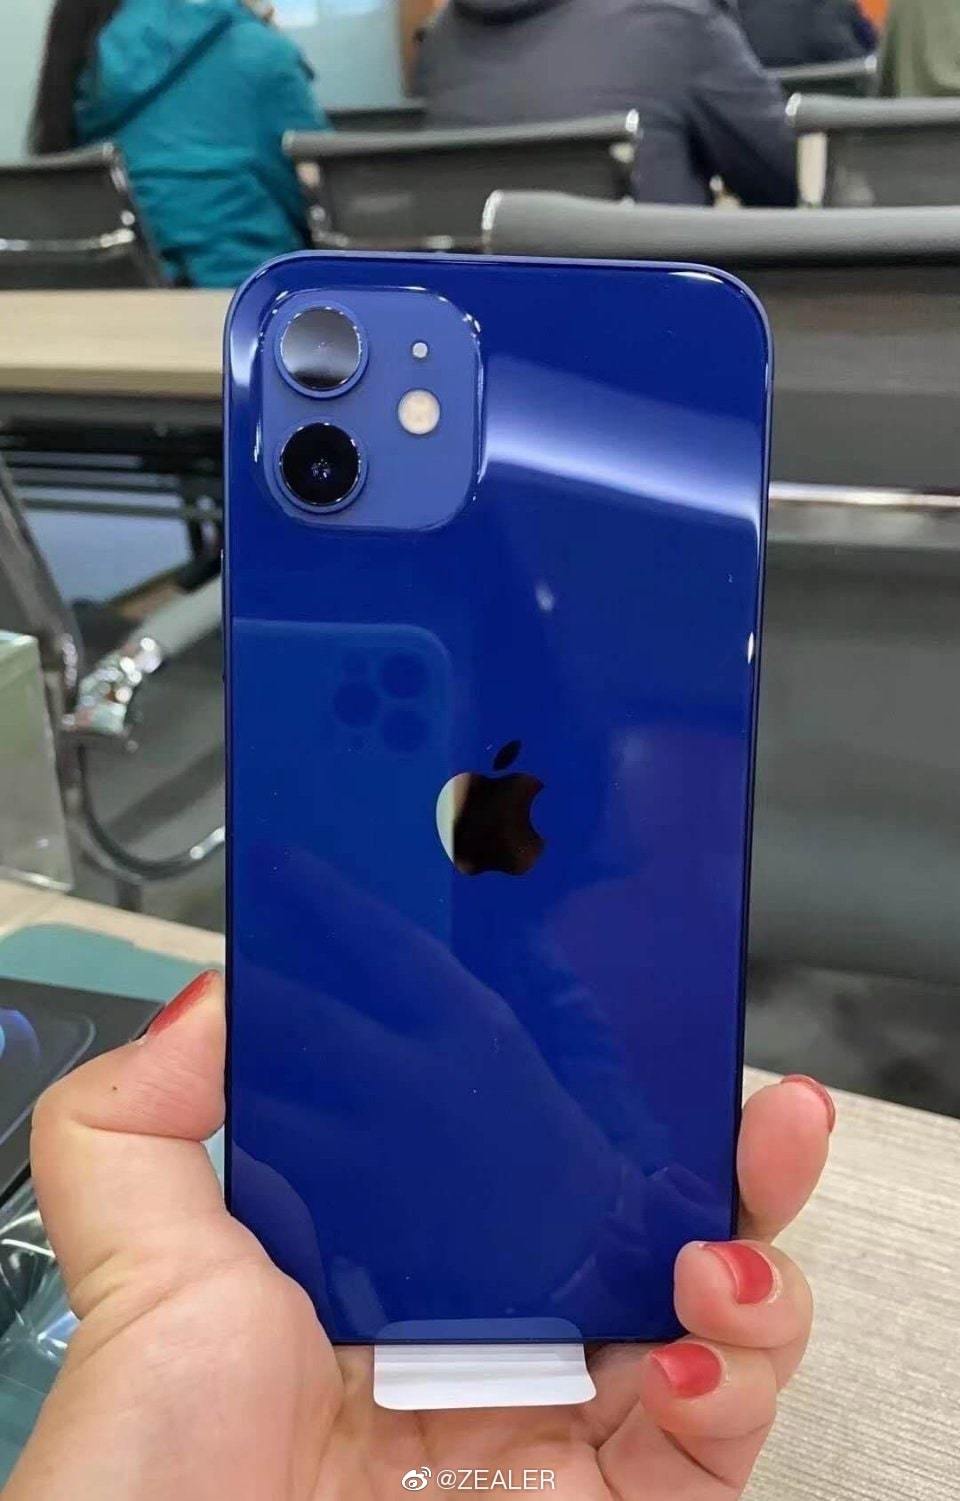 Màu xanh dương với iPhone 12 thật sự là một sự kết hợp hoàn hảo của màu sắc và thiết kế tinh tế. Chưa từng có chiếc điện thoại nào lại trông thật uyển chuyển và sang trọng như vậy. Hãy xem hình ảnh để khám phá thêm chi tiết về iPhone 12 màu xanh dương.